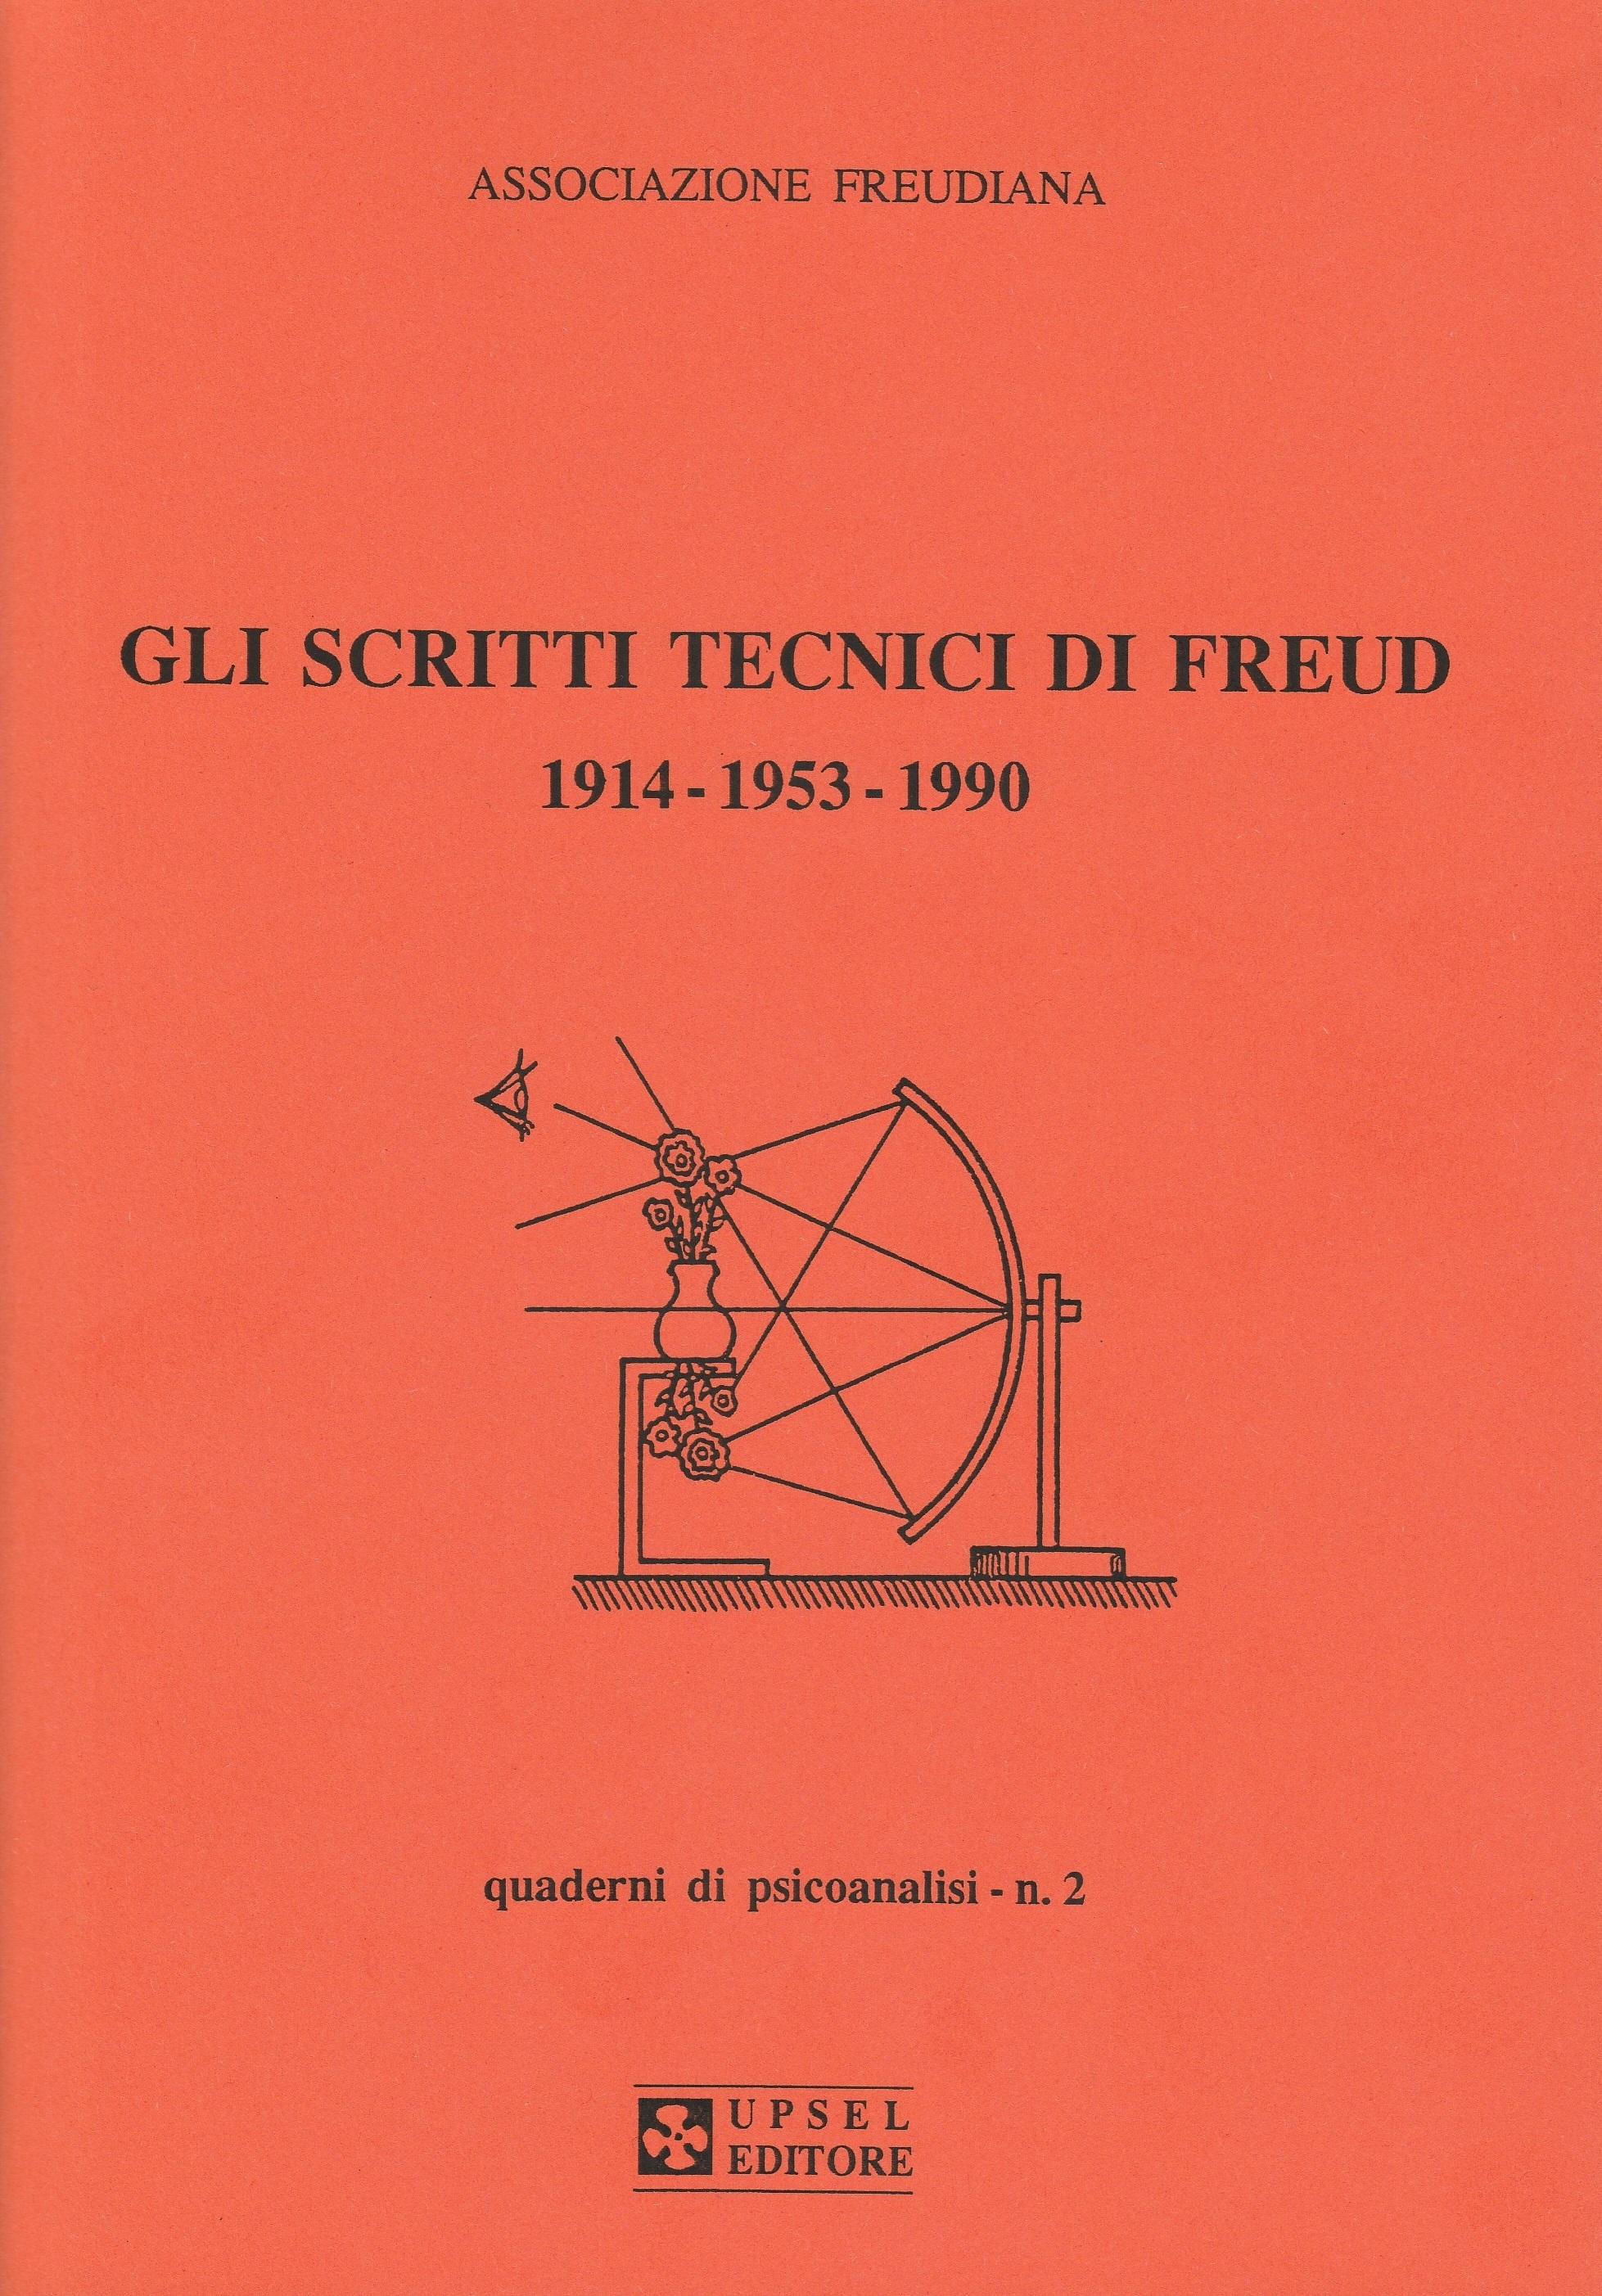 Sigmund Freud. Gli Scritti Tecnici di Freud. 1914 - 1953 - 1990. Associazione Freudiana